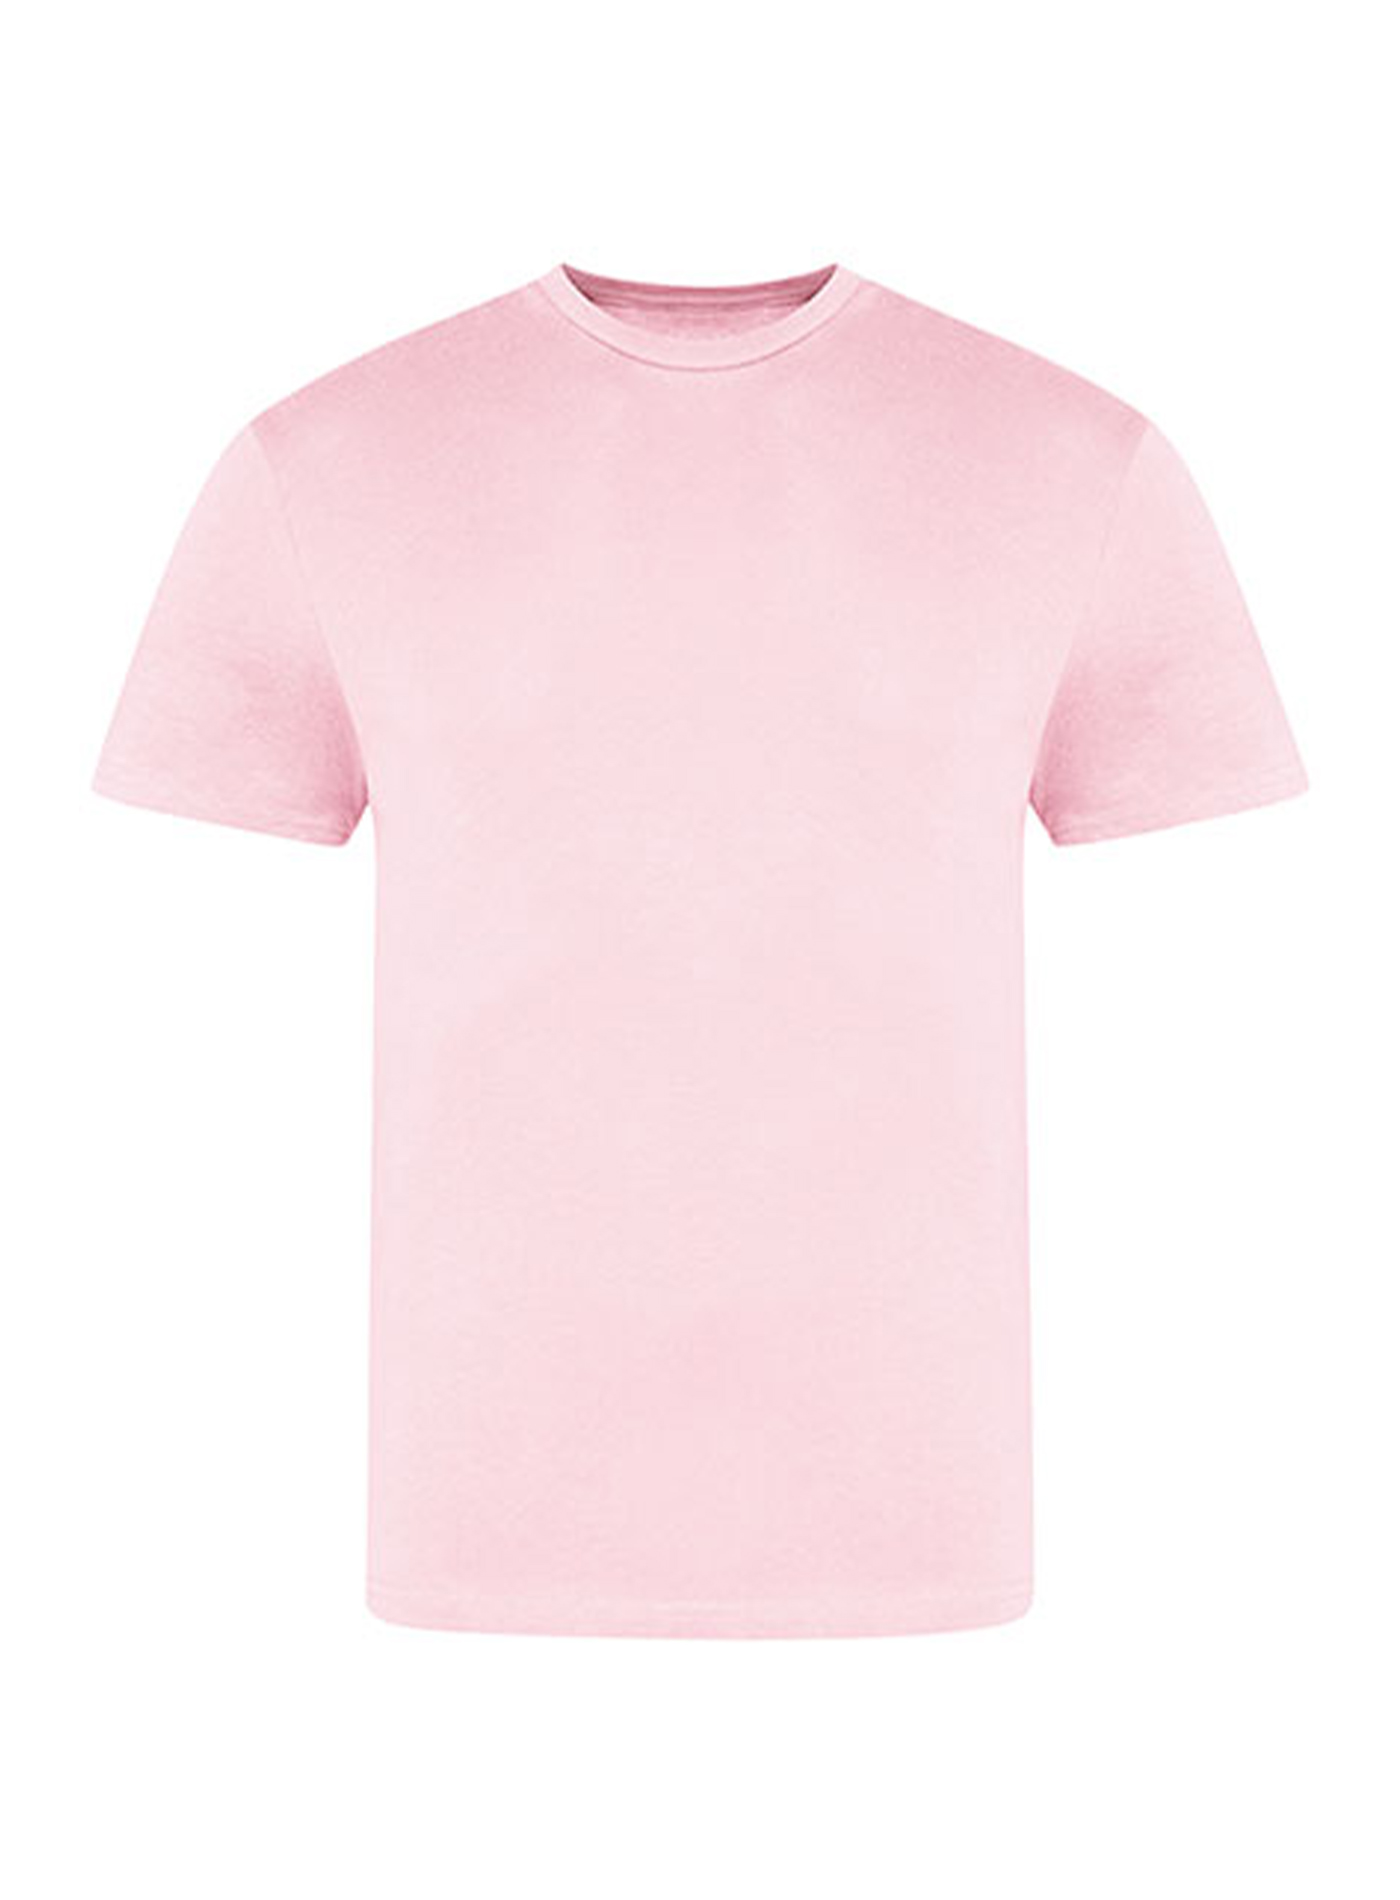 Pánské tričko Just Ts - Baby růžová XL